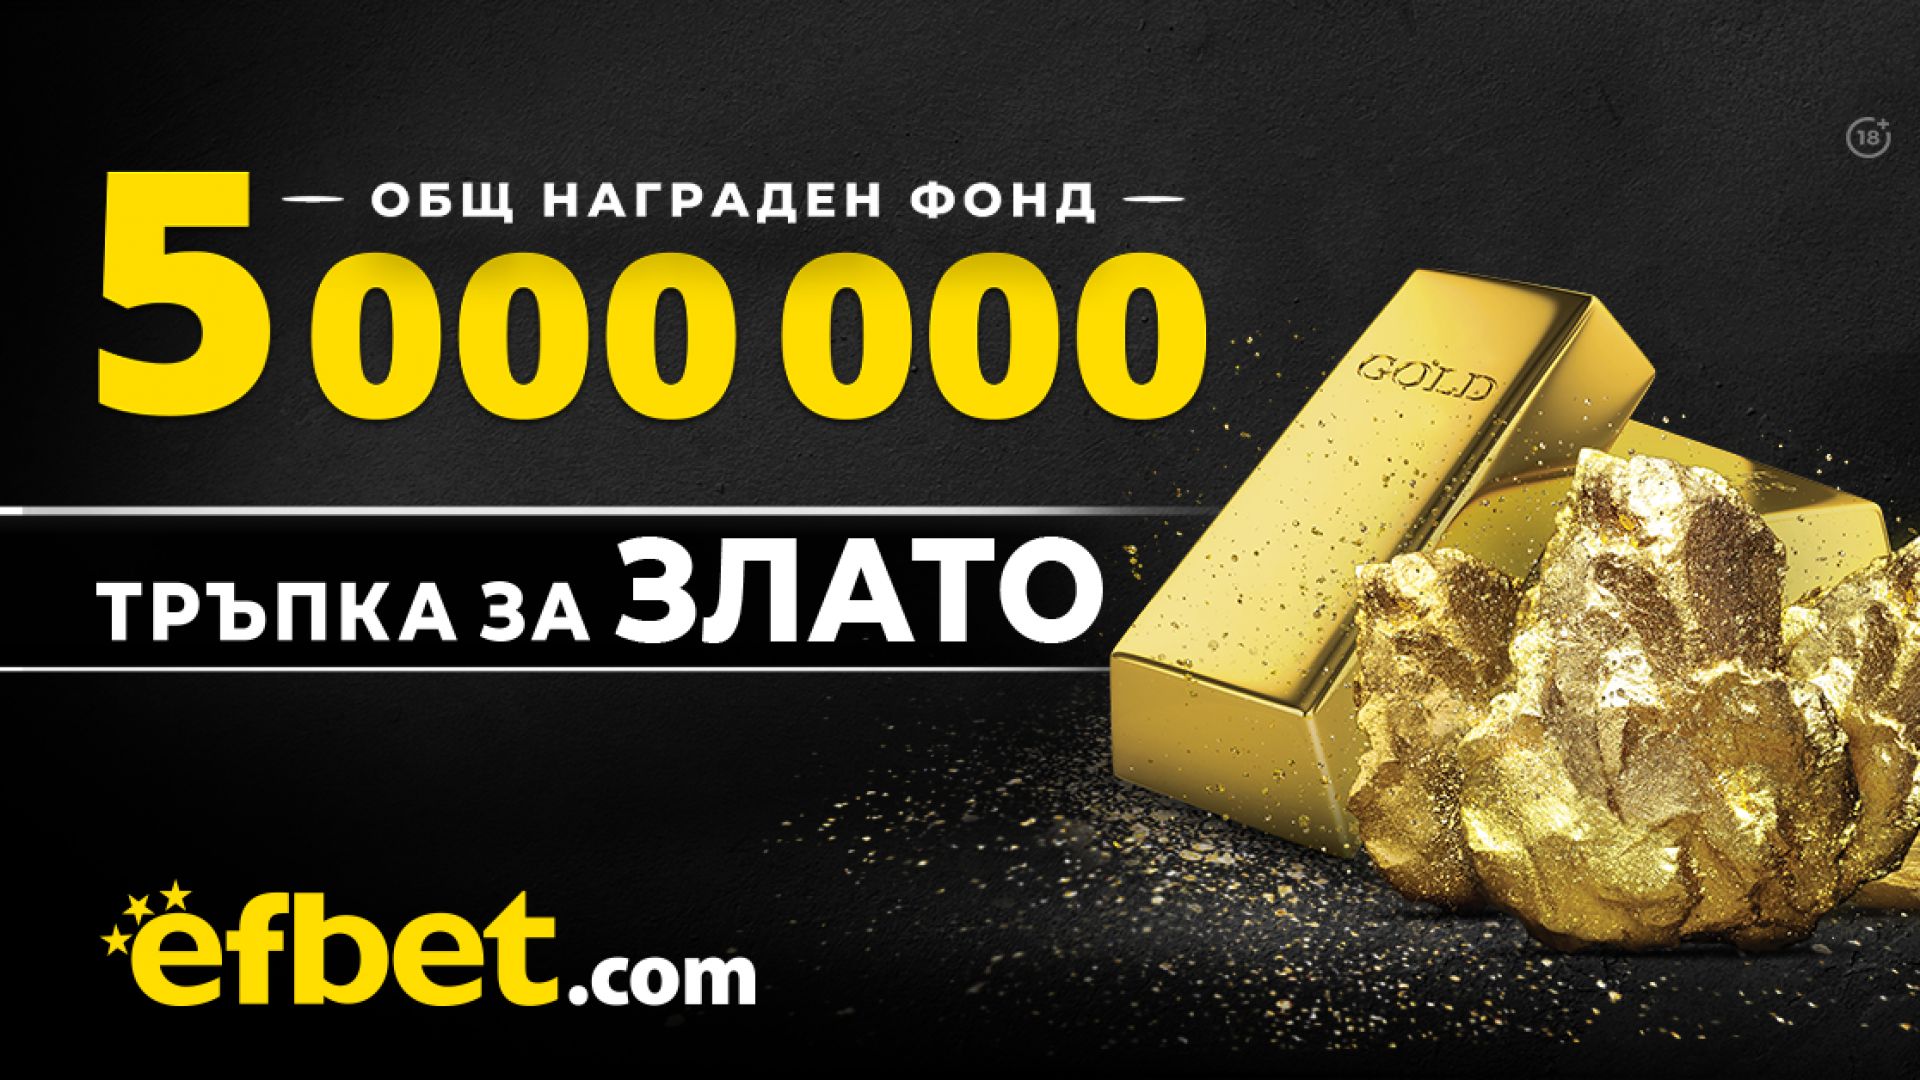 5 000 000 награден фонд в новата игра на efbet ''Tръпка за злато''